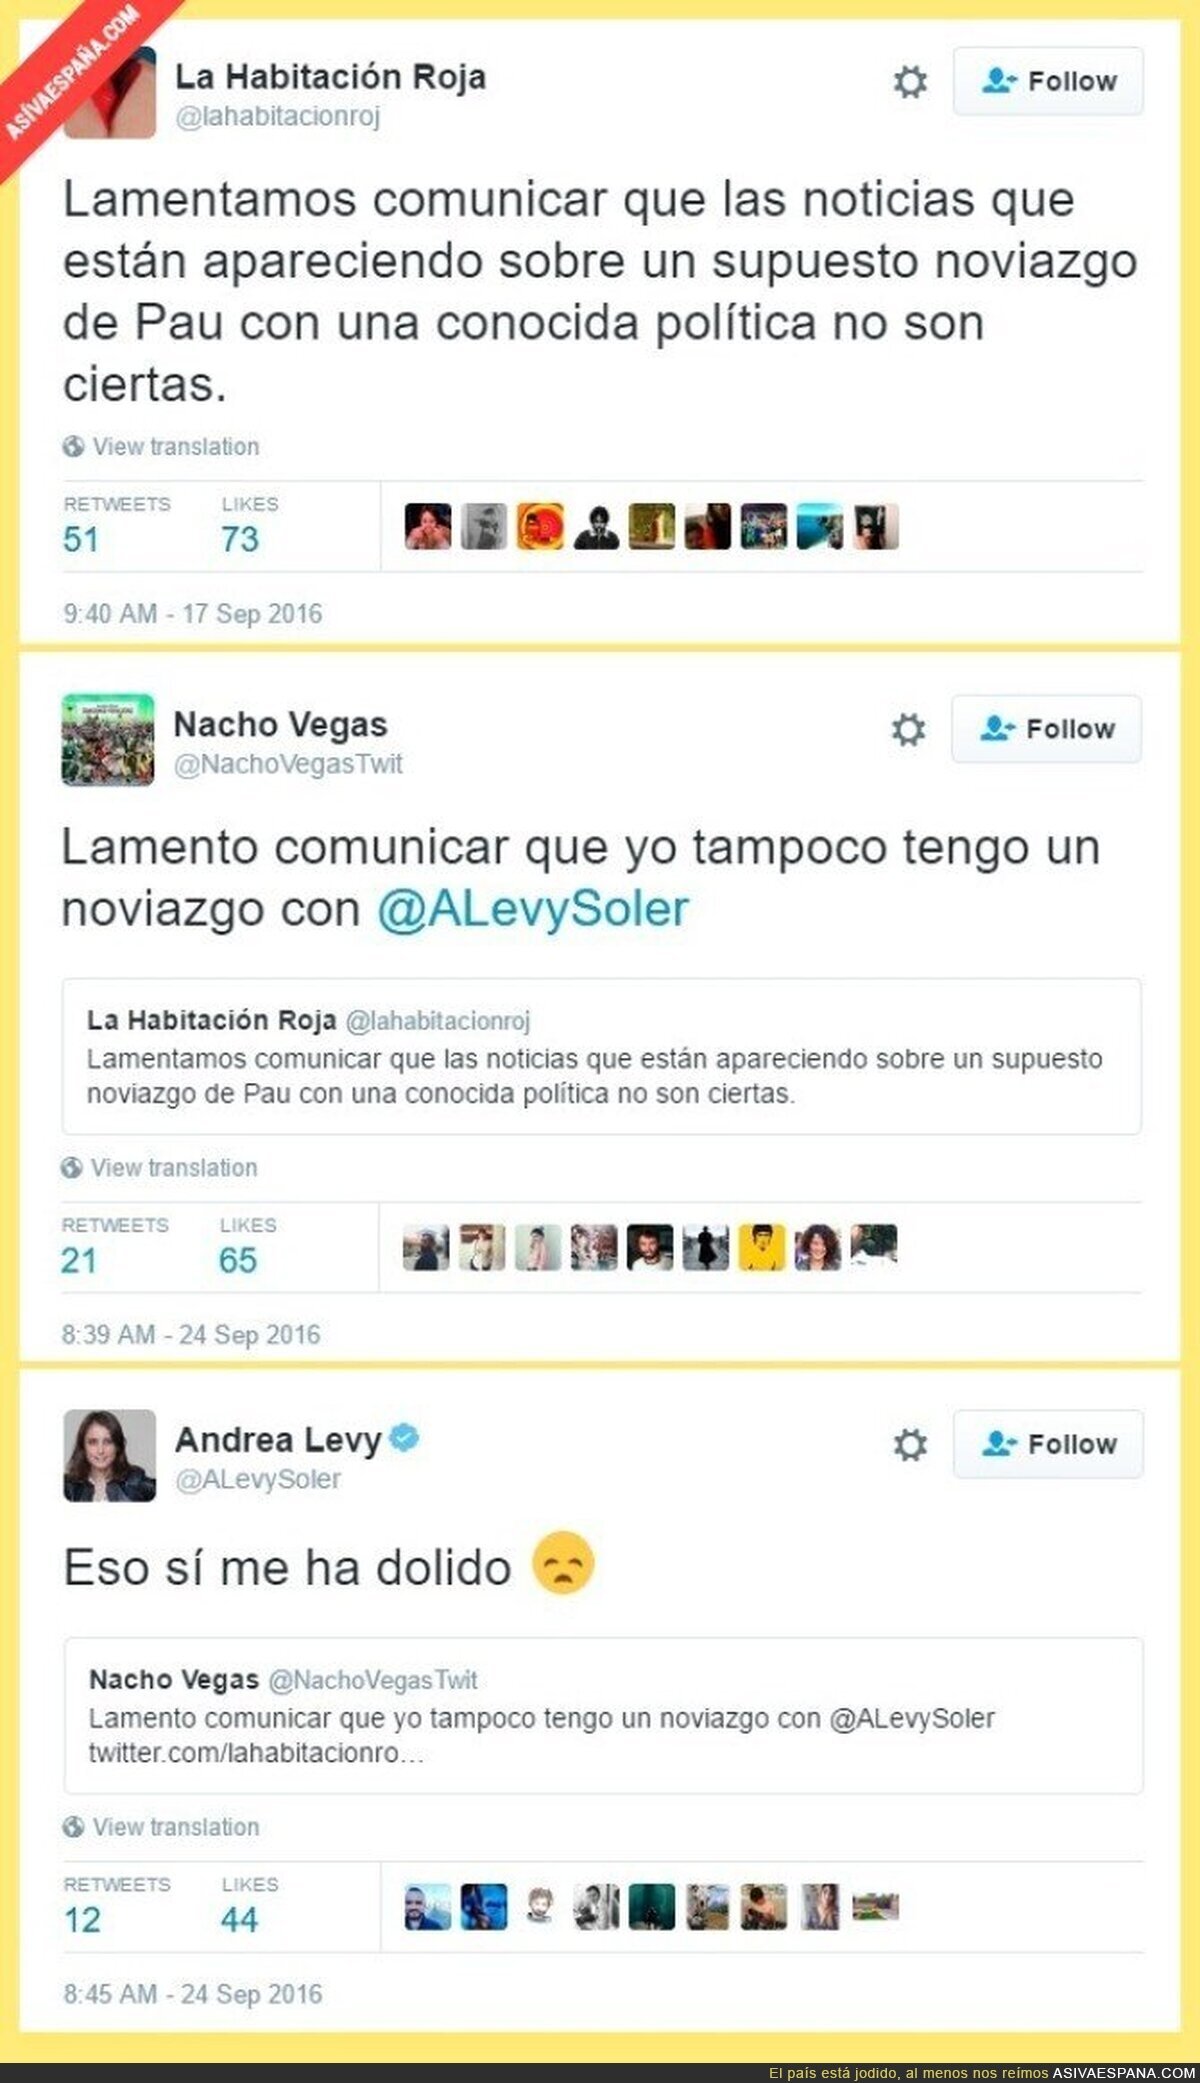 Desmienten que Levy sea pareja del miembro de una banda indie española y Nacho Vegas se ríe de ella